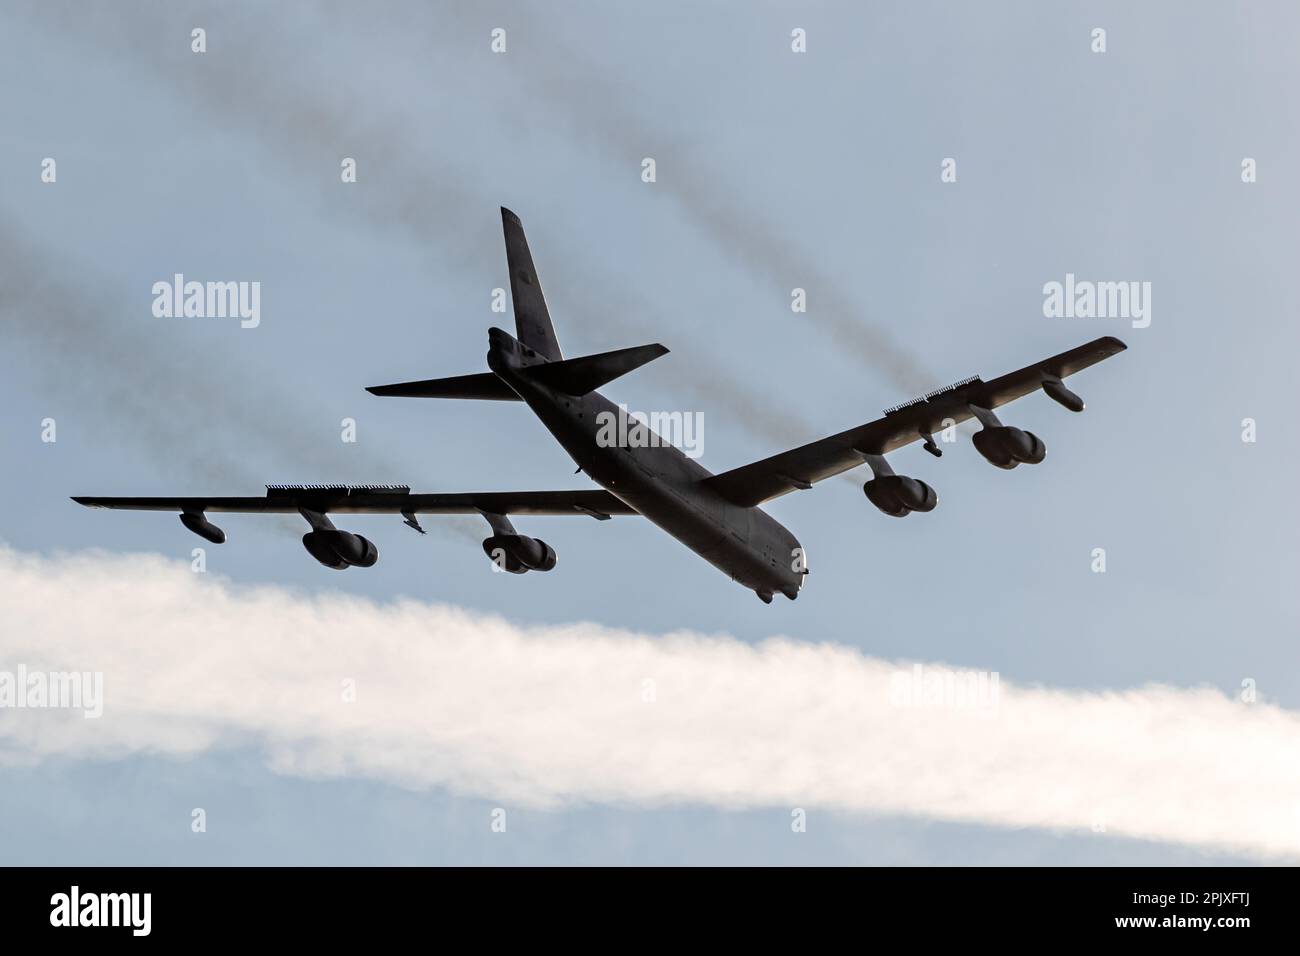 BOMBARDIER B-52 StratoFortress BOEING DE LA US Air Force effectuant un passage bas. Sanicole, Belgique - 13 septembre 2019 Banque D'Images